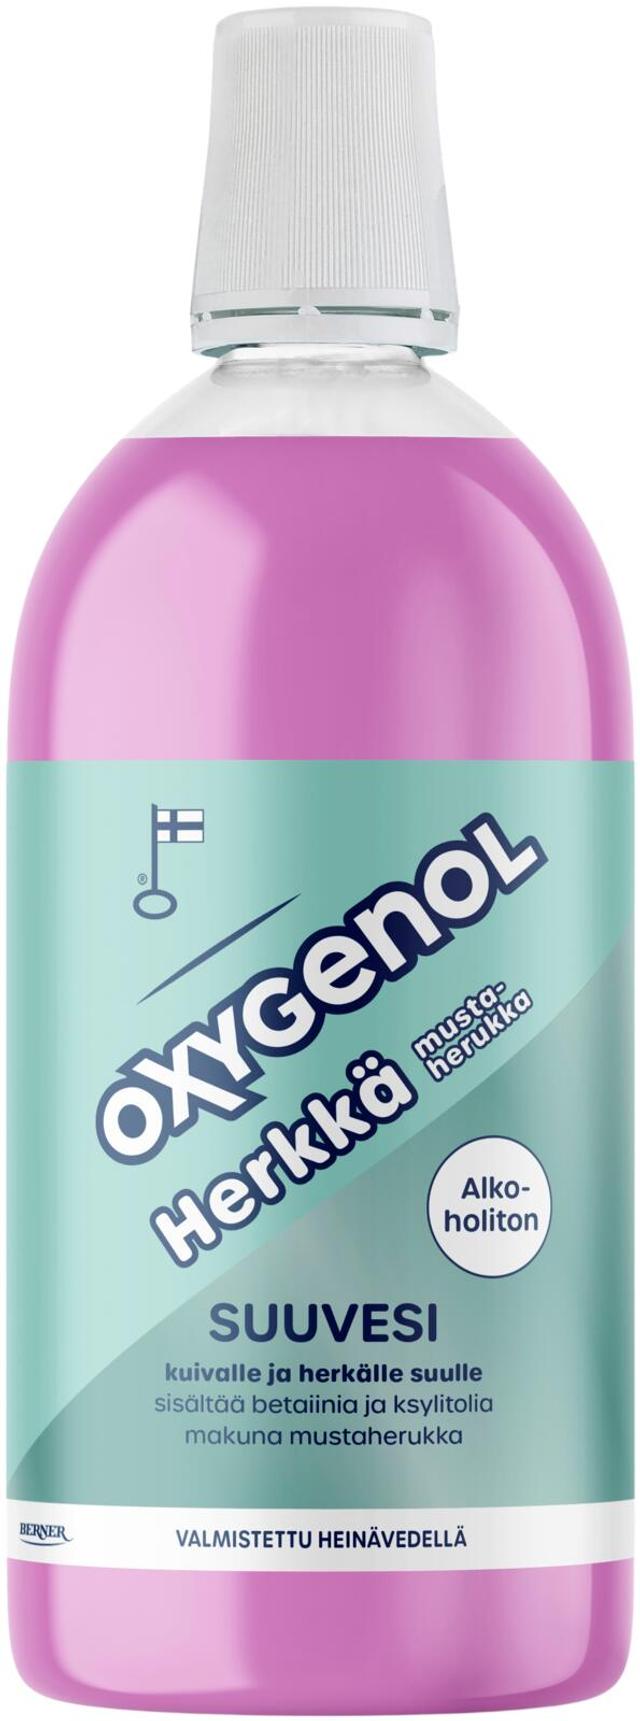 Oxygenol 500ml Herkkä suuvesi